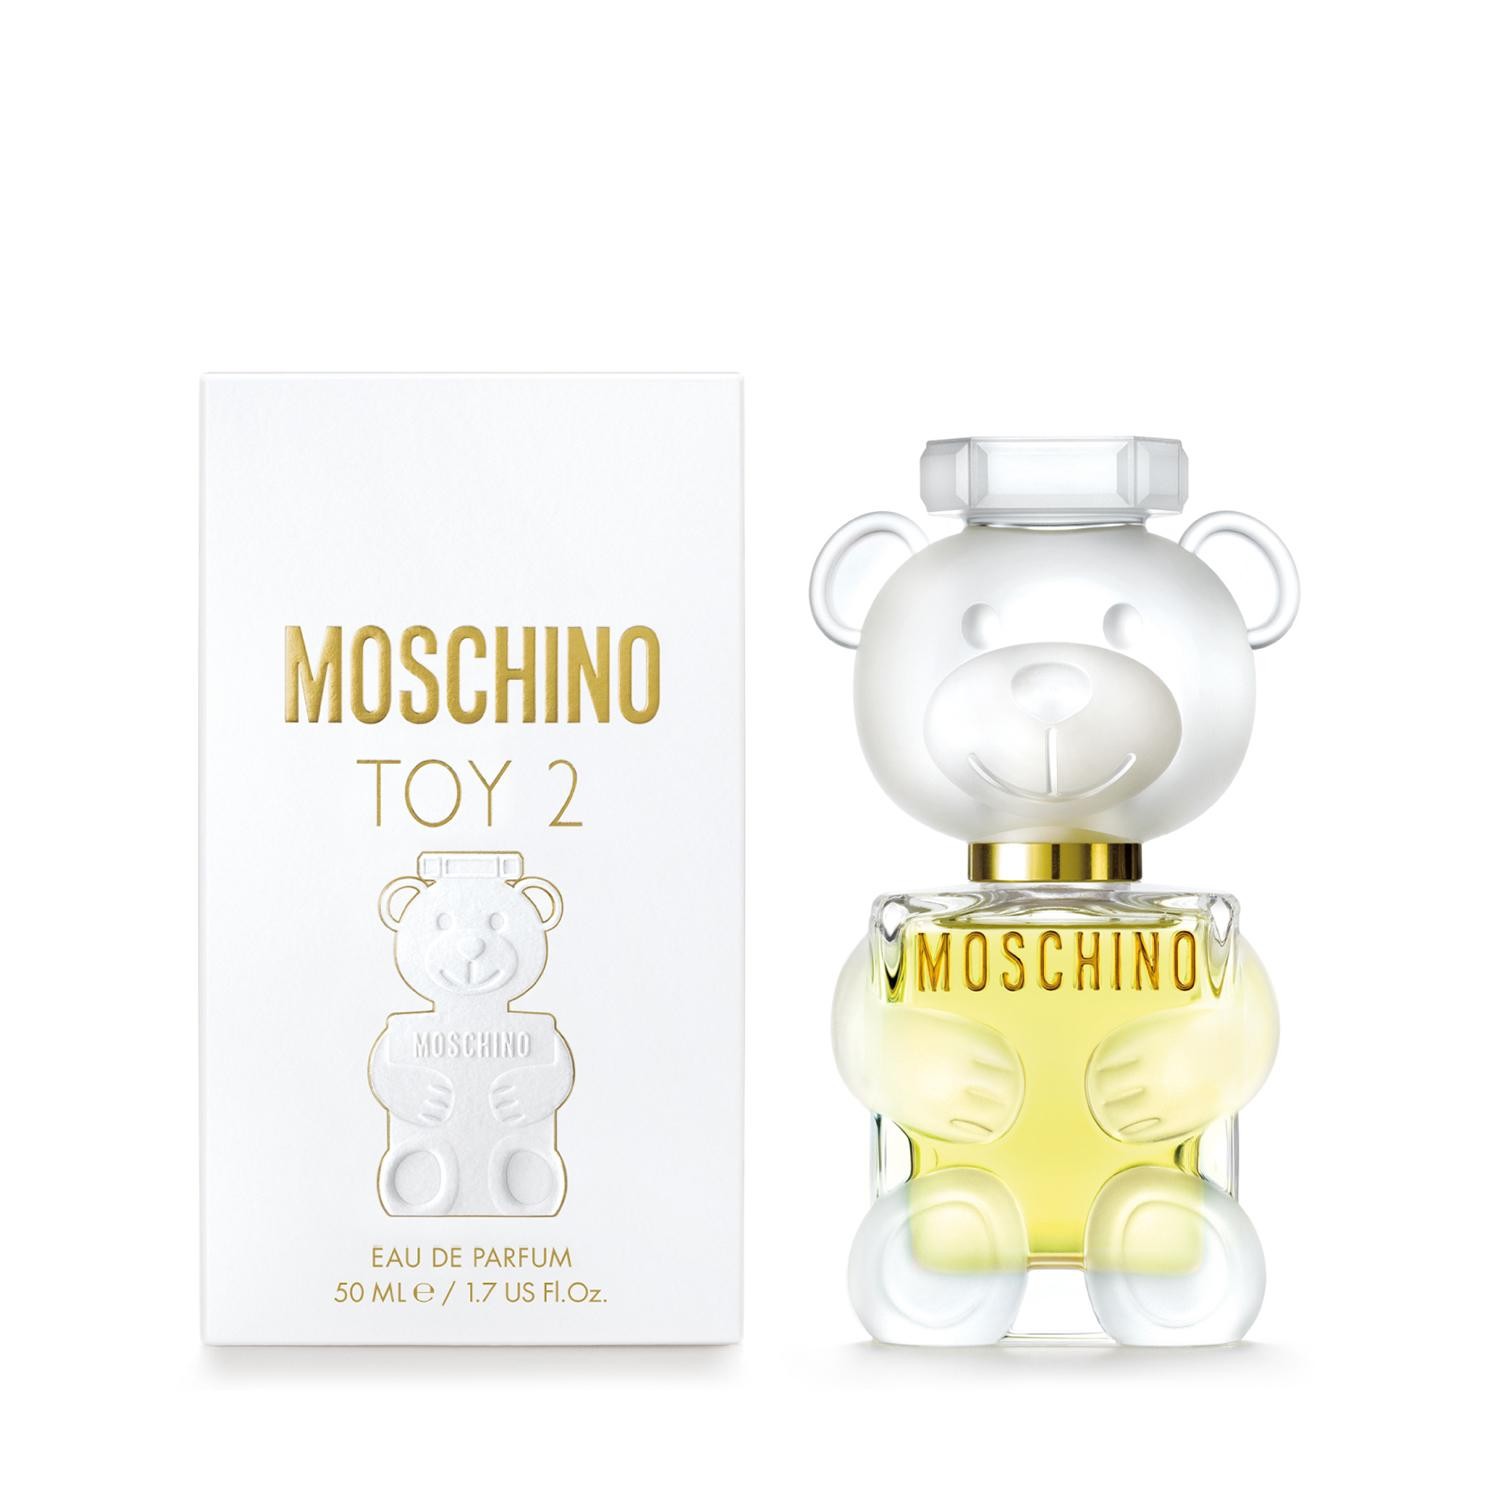 Moschino Toy 2 Eau De Parfum 50ml